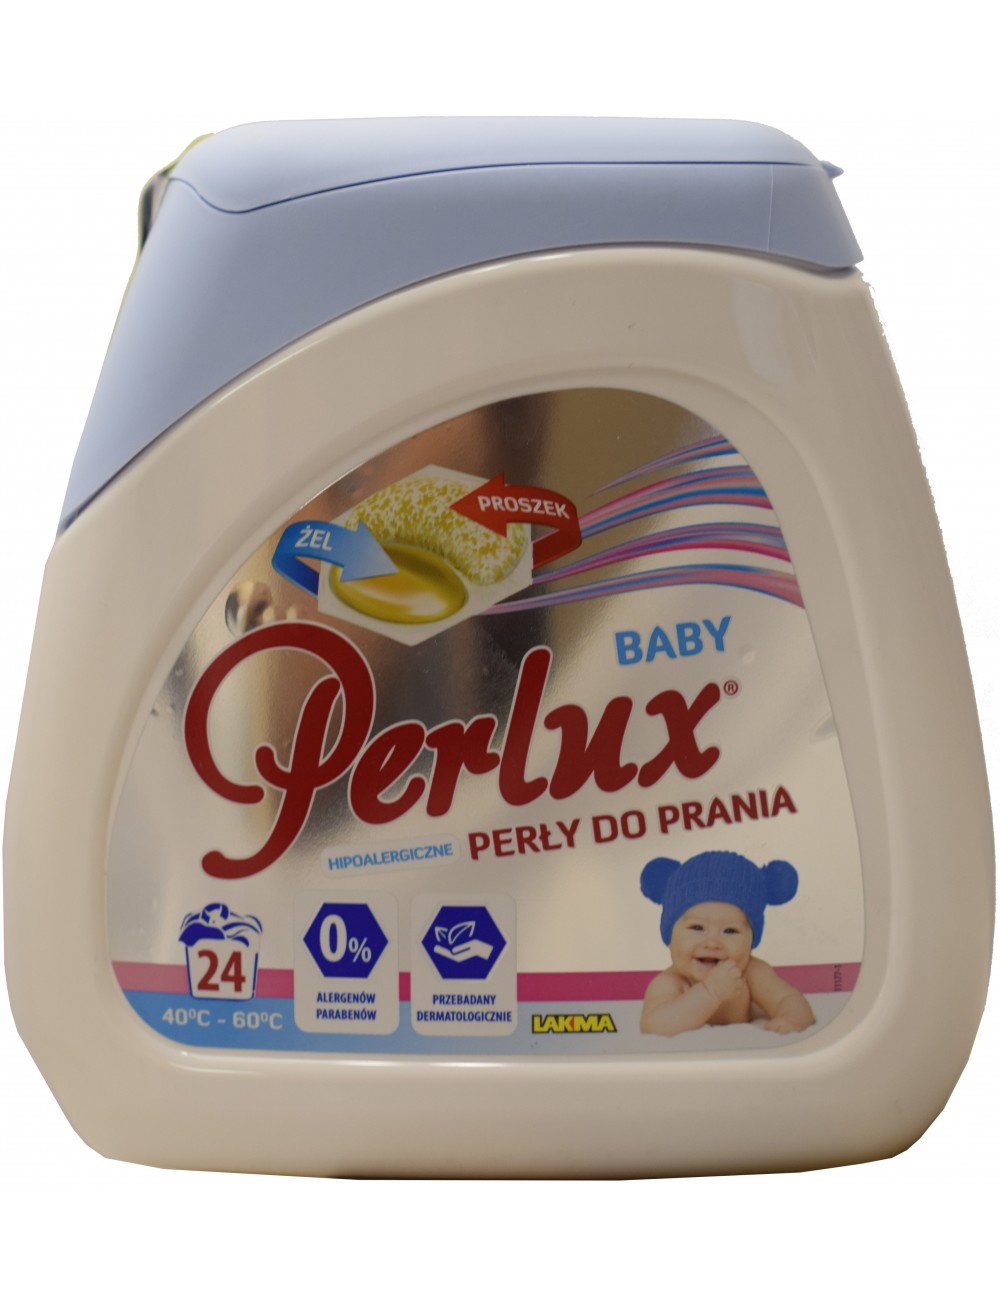 Perlux Baby Perły Piorące 24szt (24 prania) – superskoncentrowane, do odzieży dziecięcej